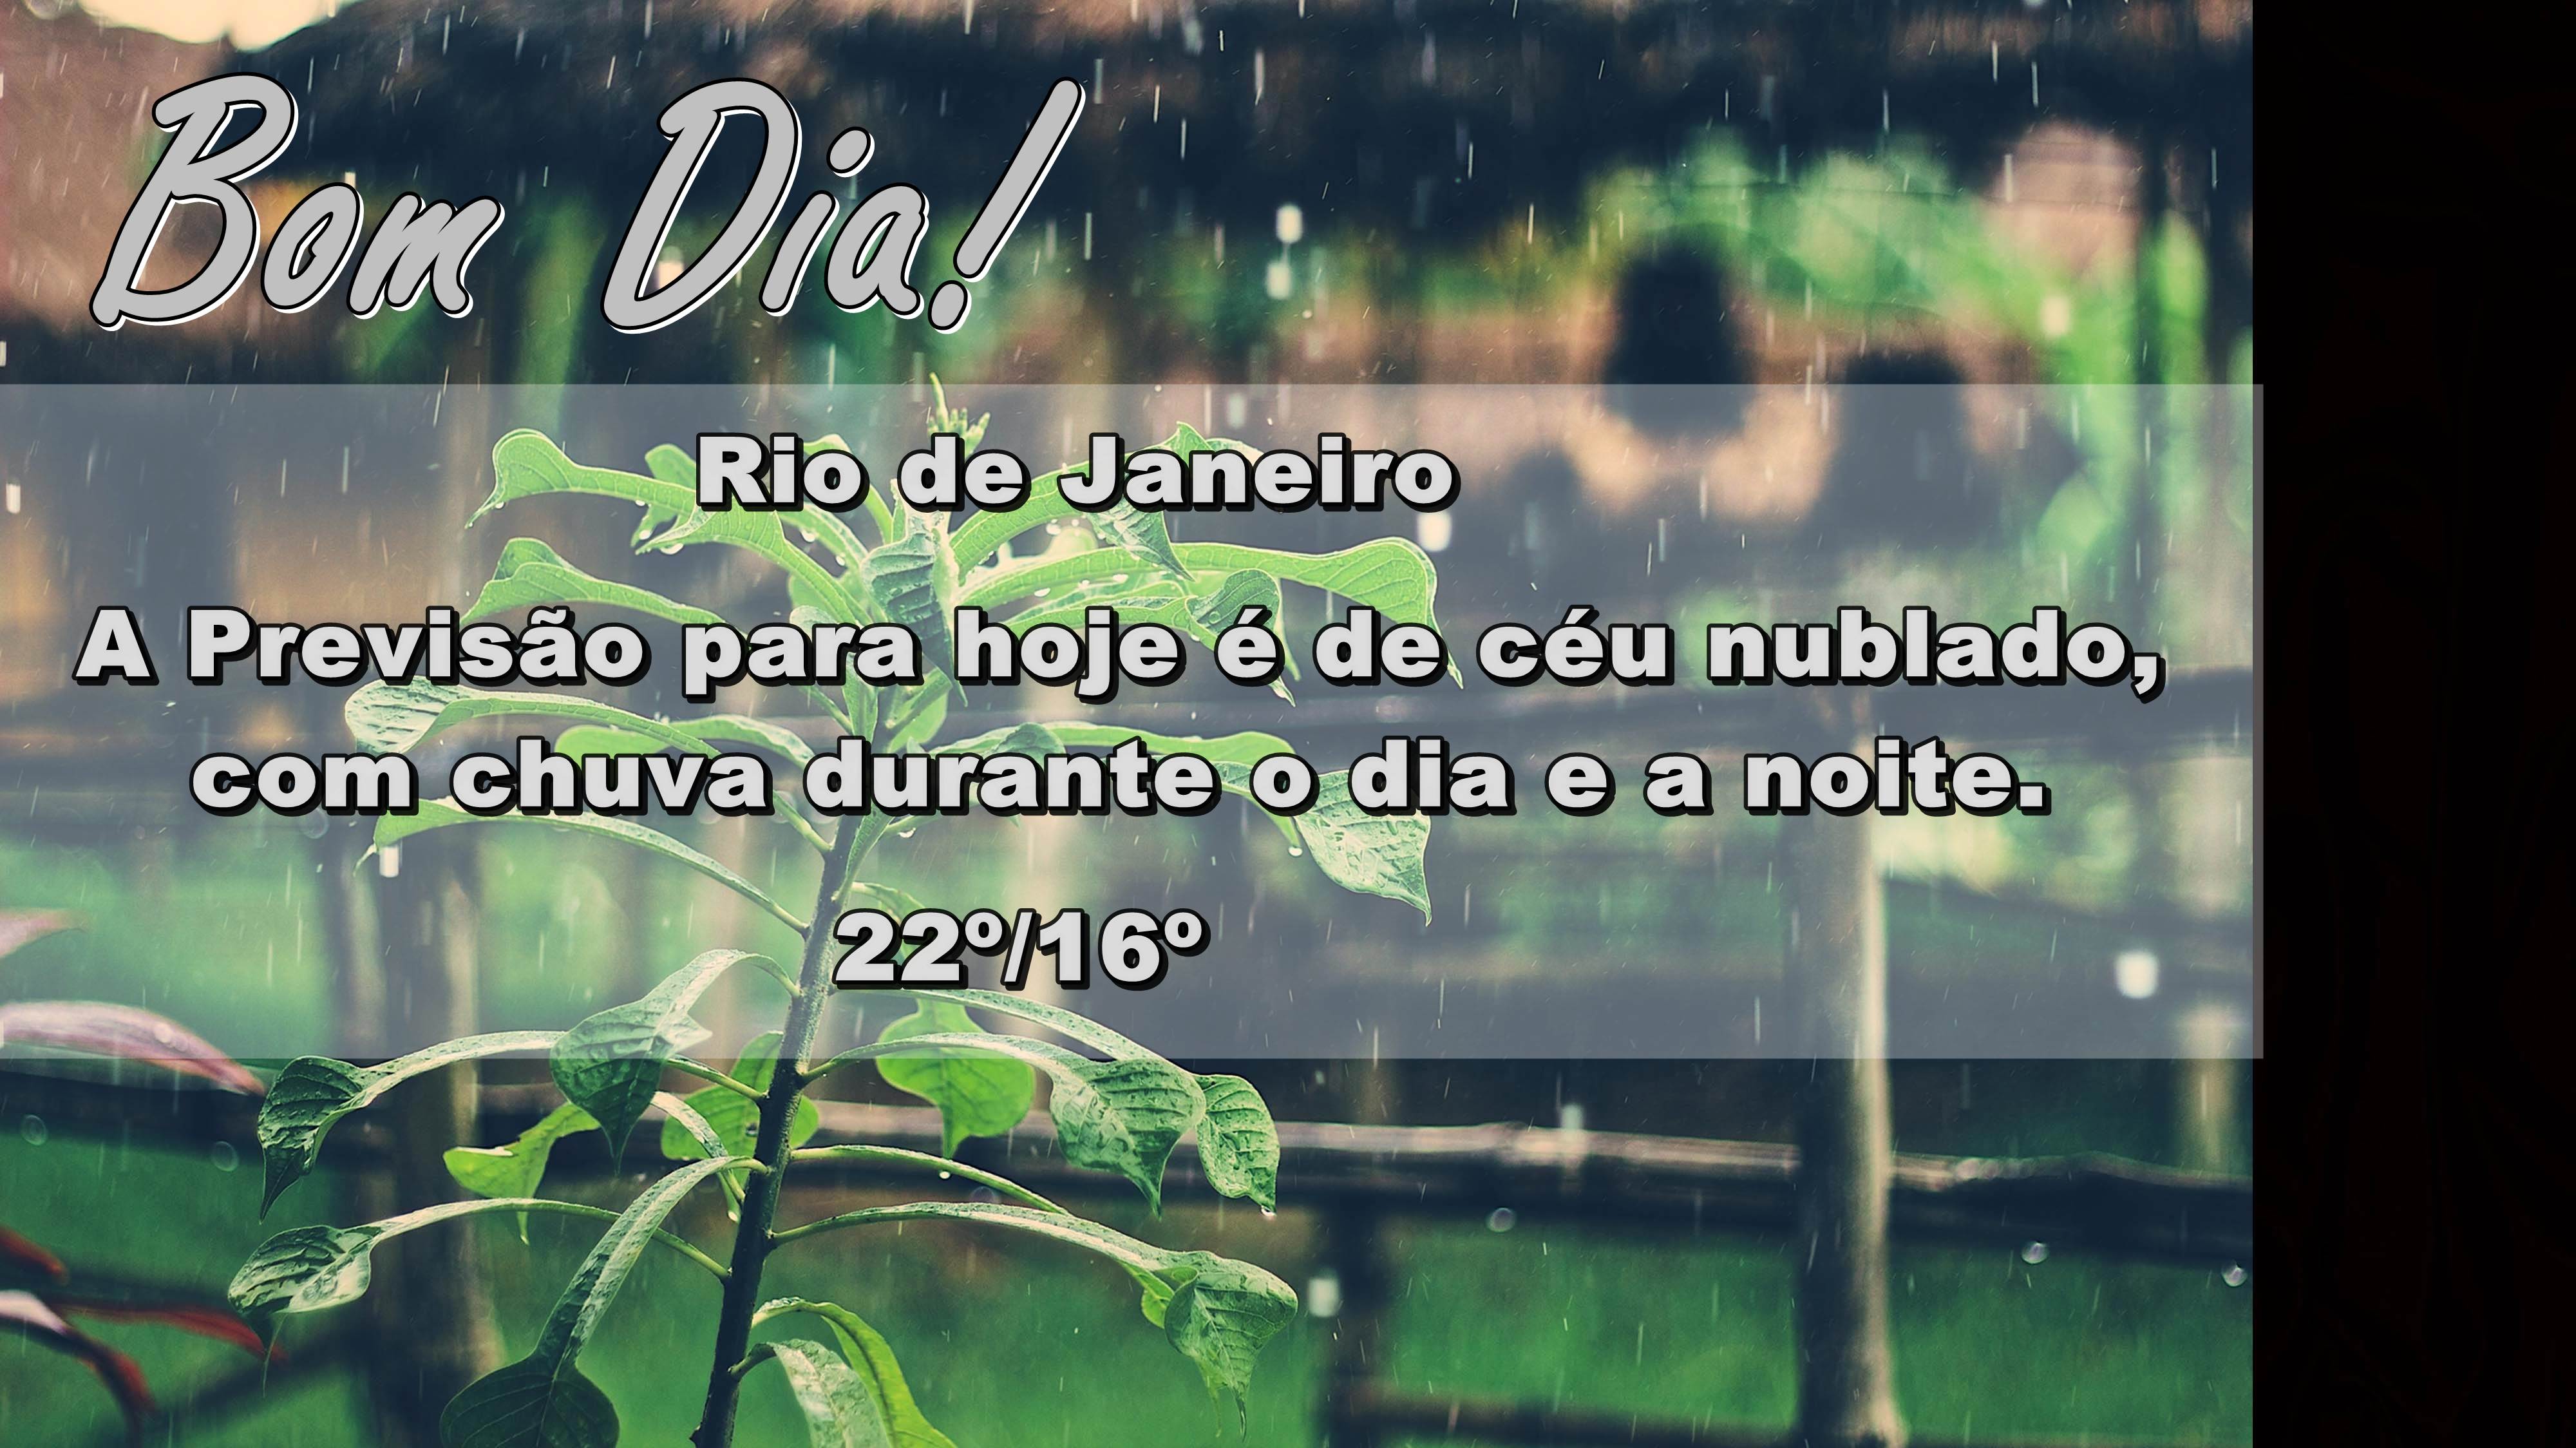 SITE MODELO - BOM DIA CHUVA 070616 | Rádio Rio de Janeiro